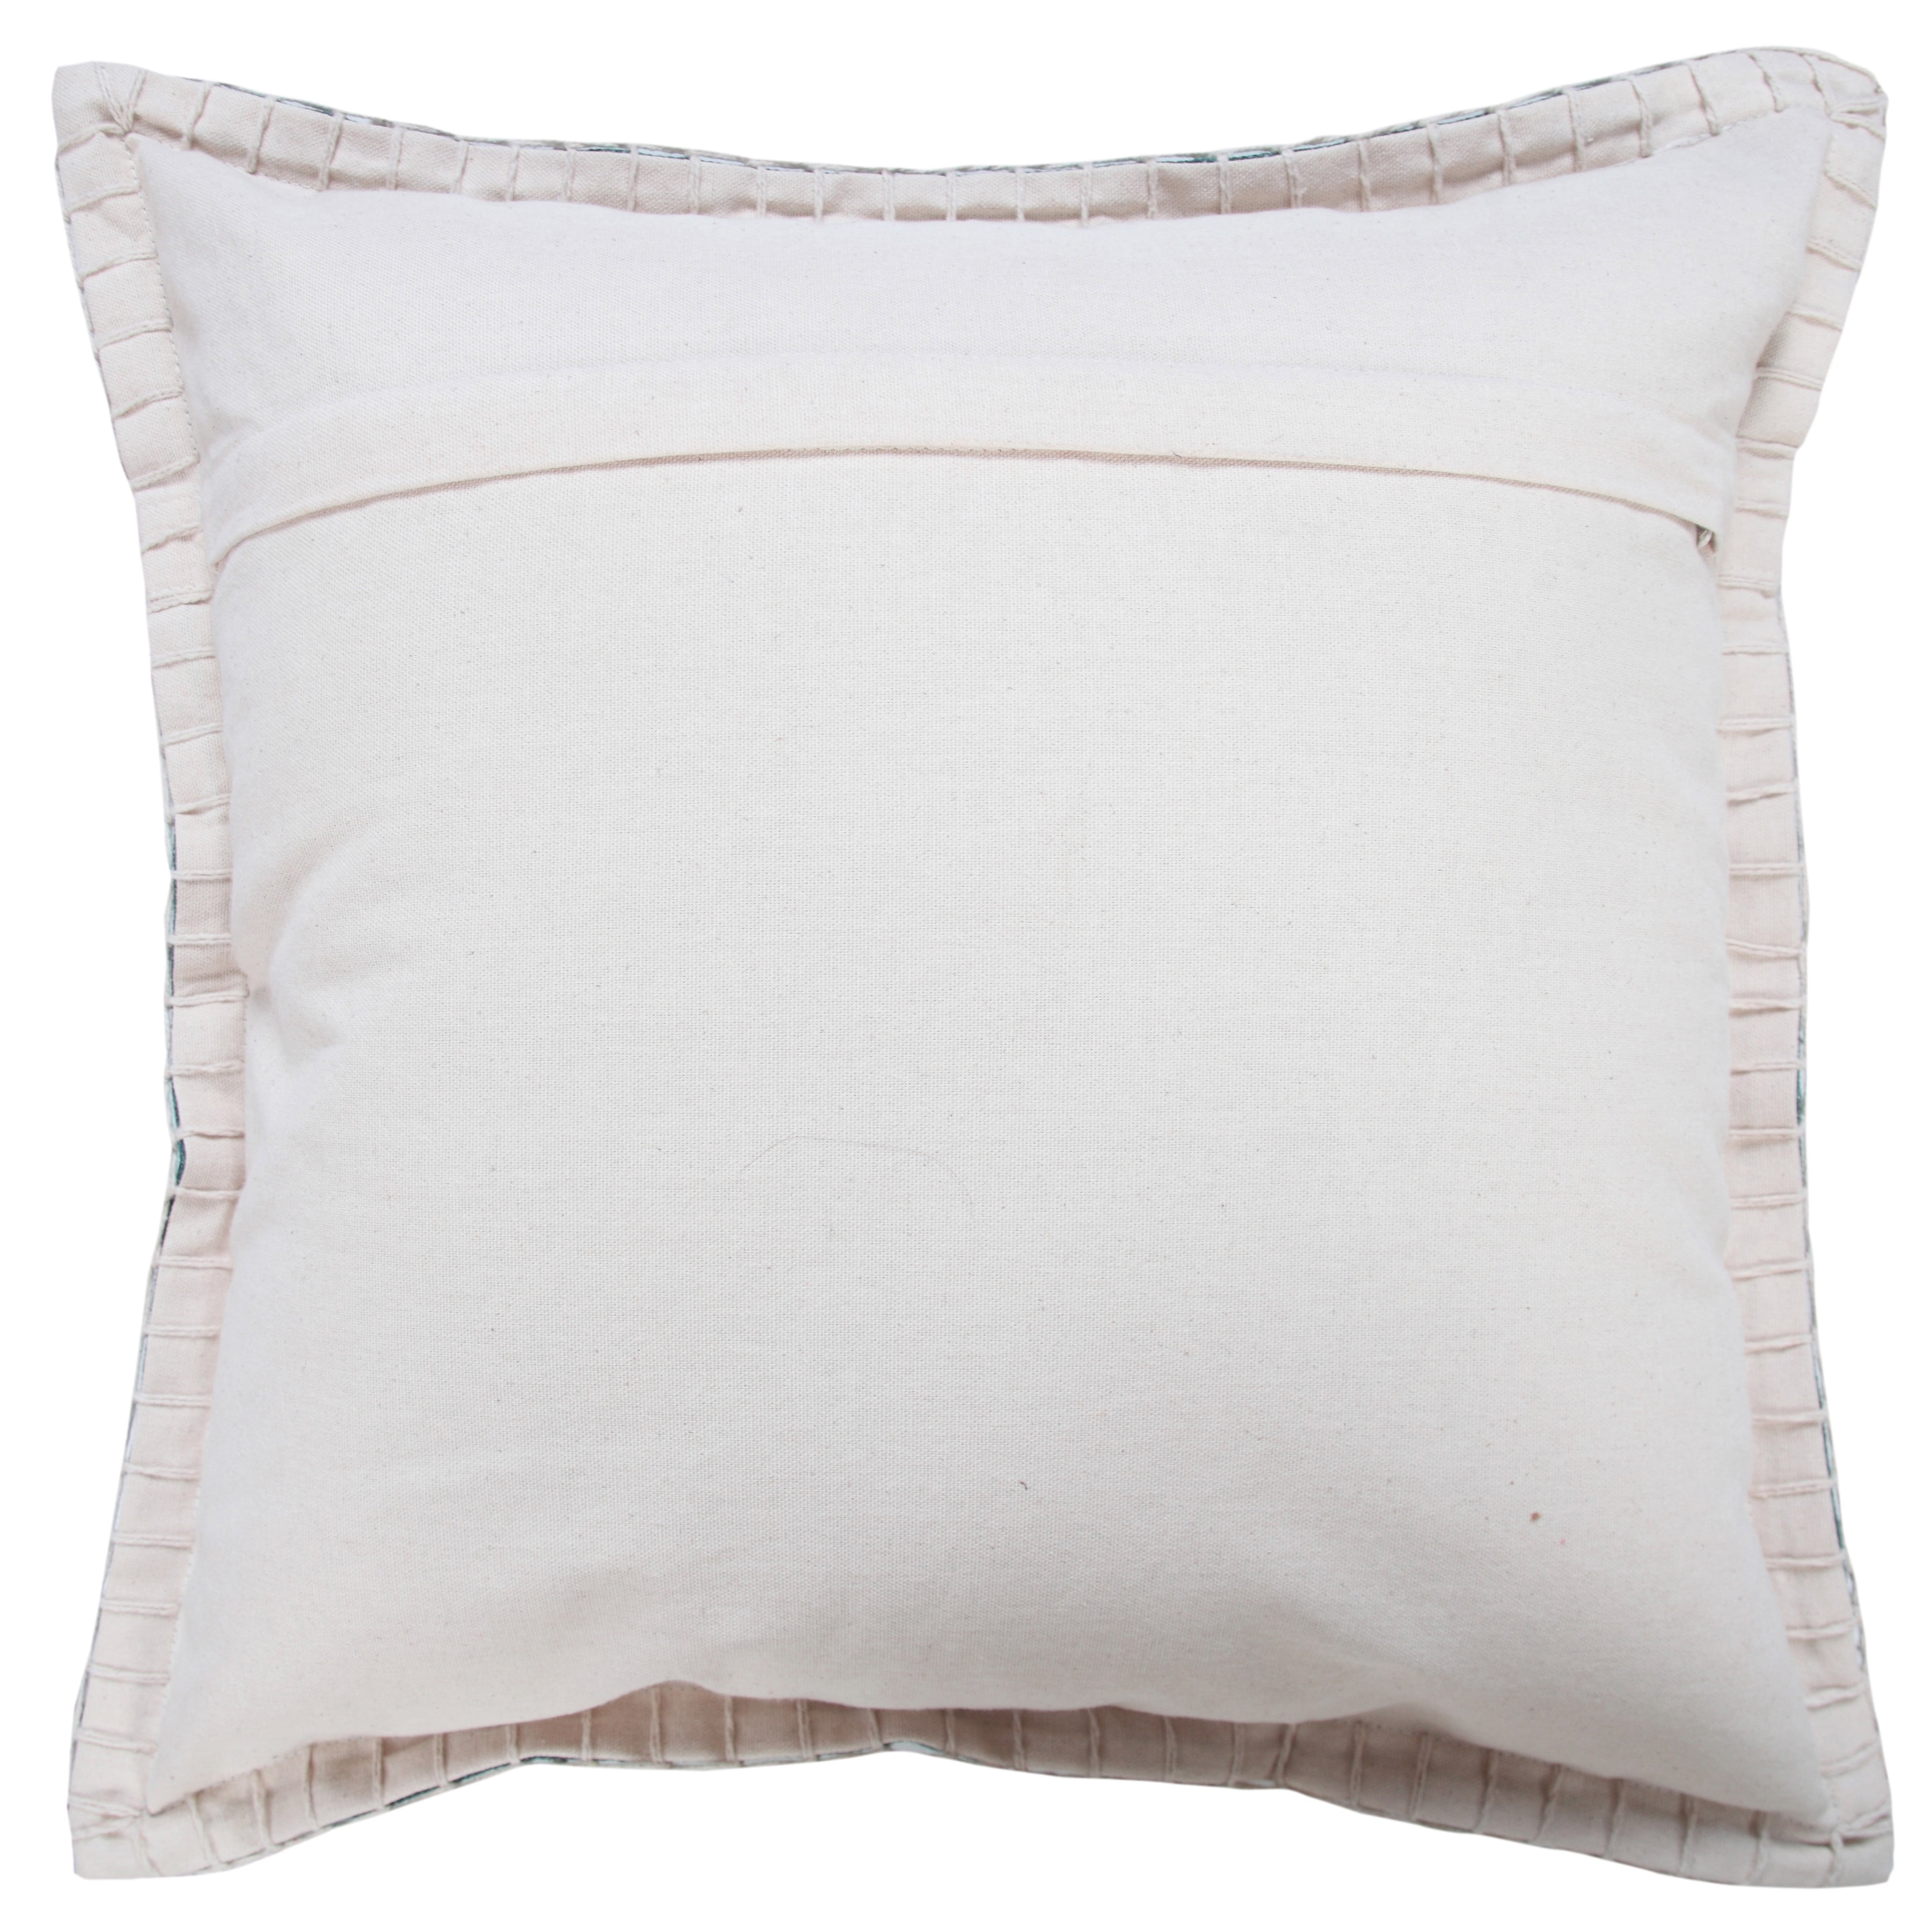 Two Light Green White Size 18”x18” Throw Pillows Cotton Cushion